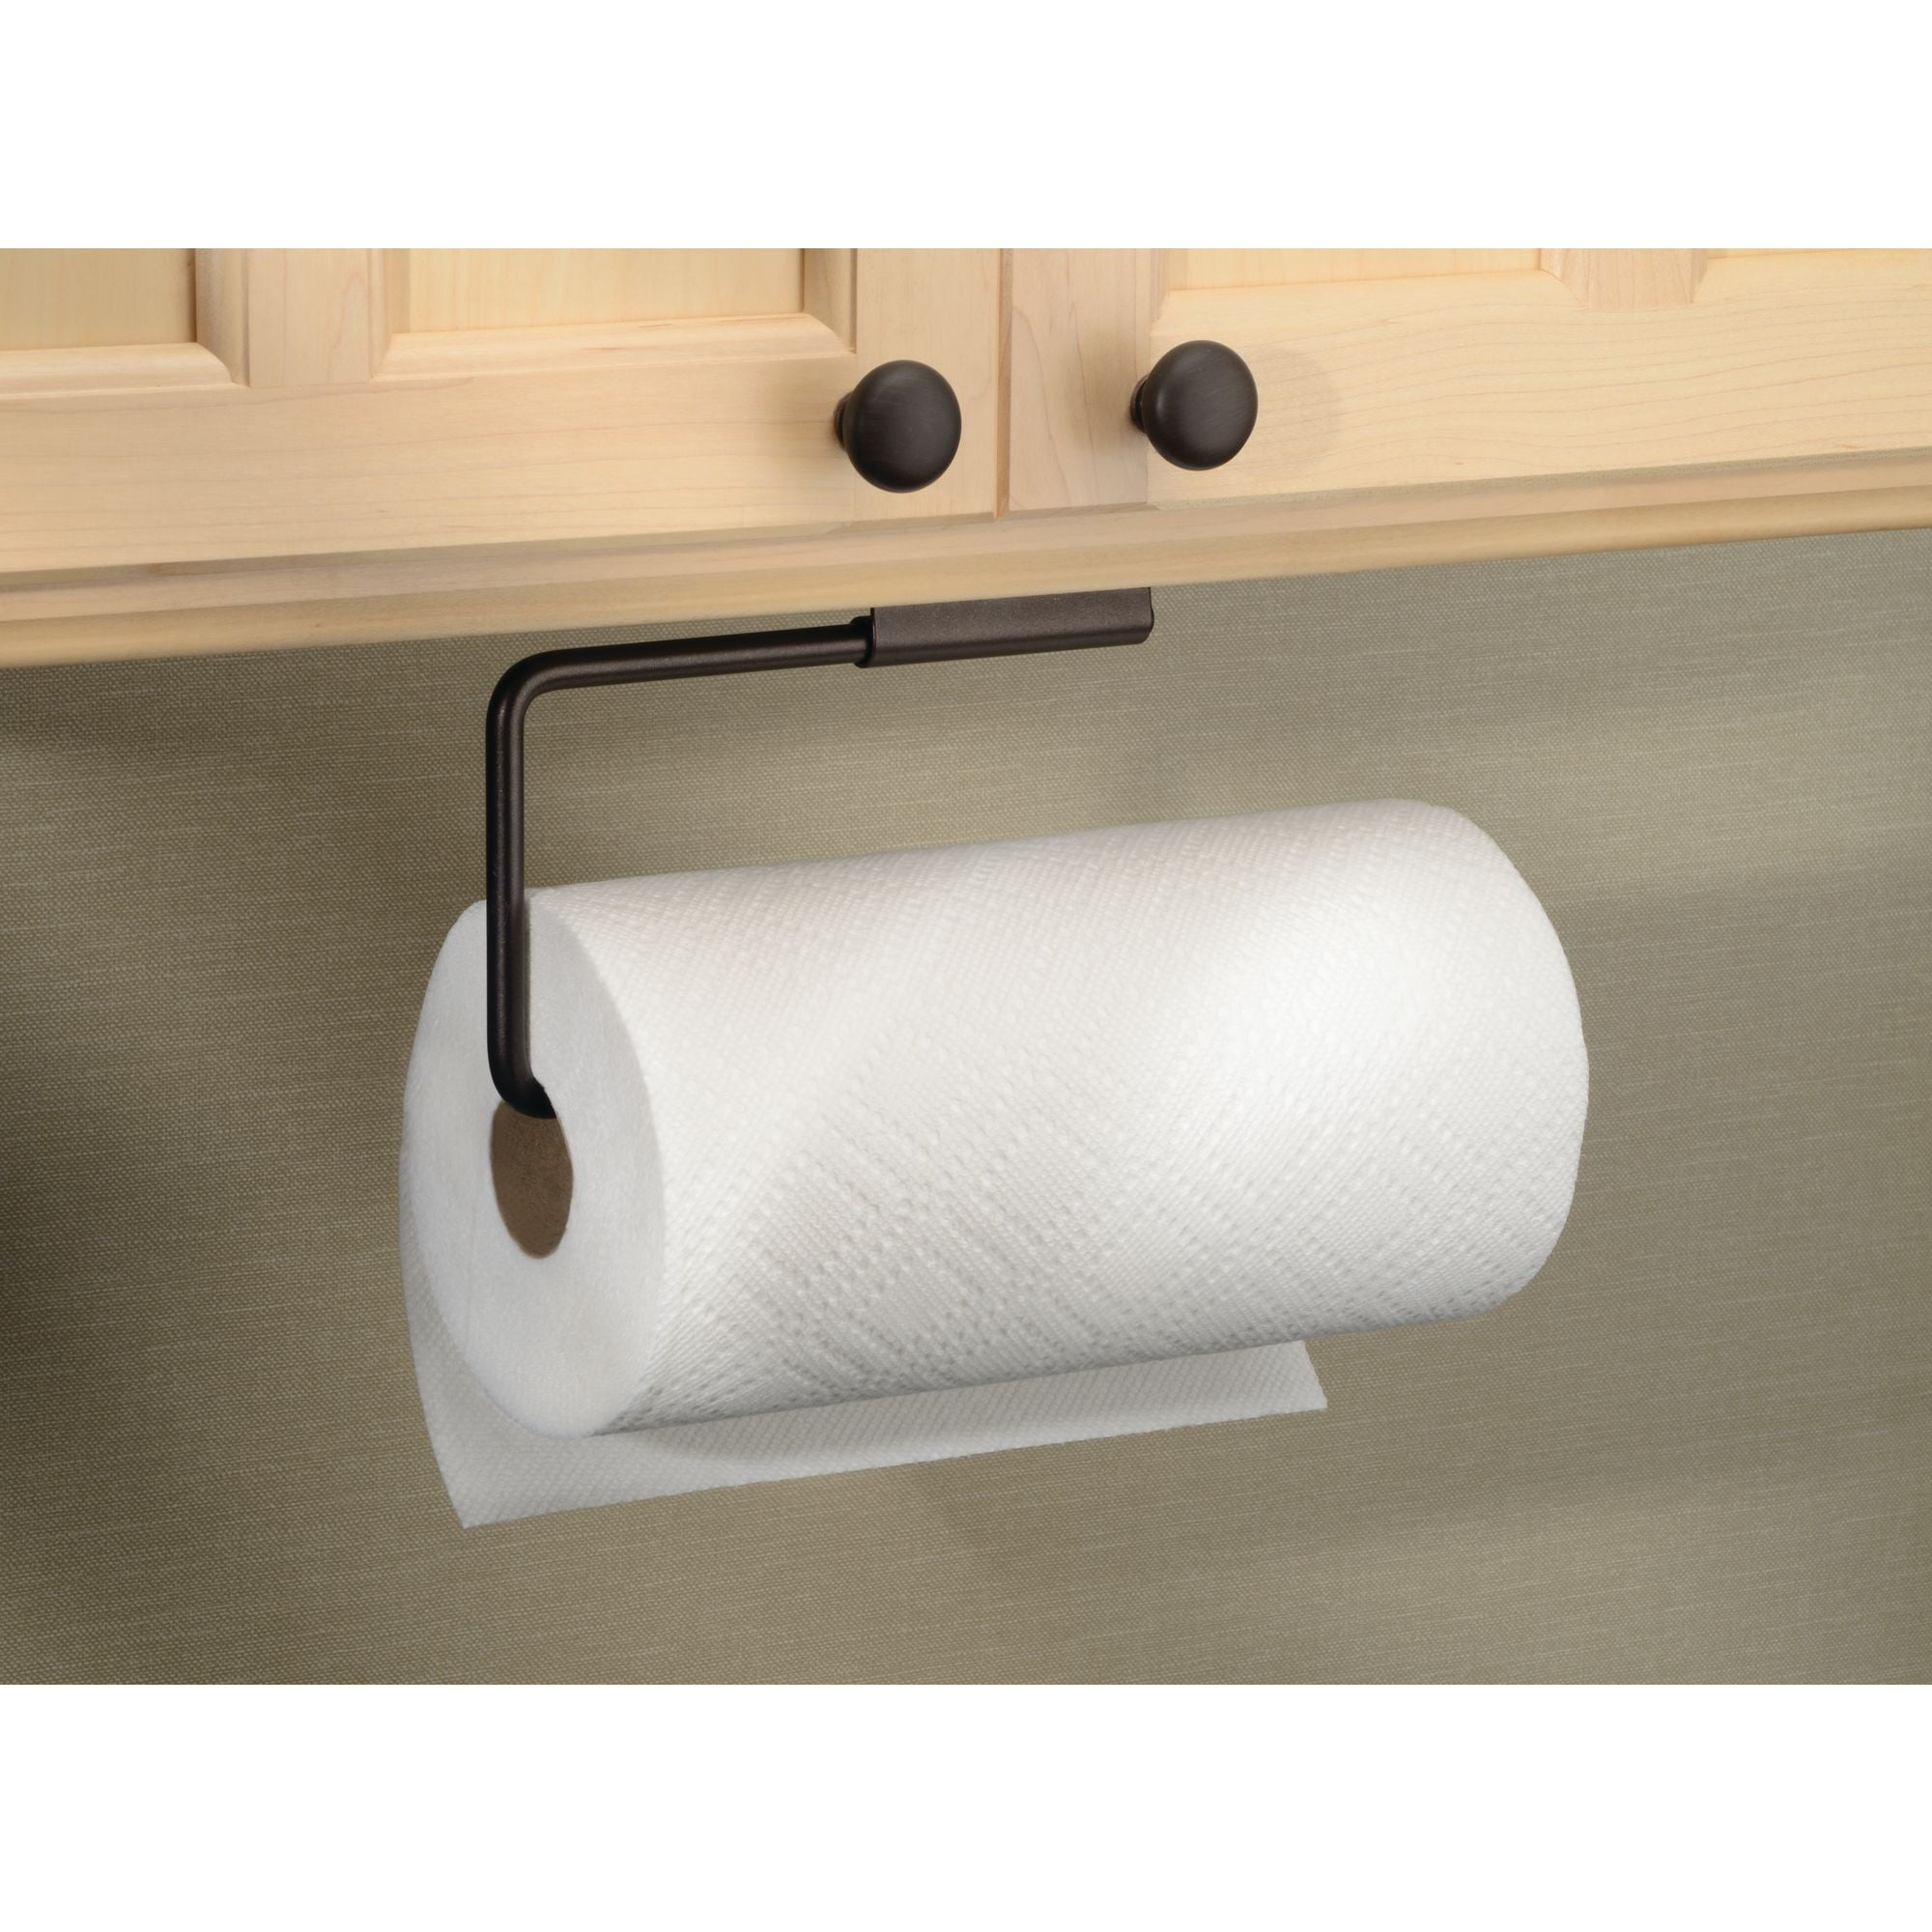 Idesign Swivel Paper Towel Holder For, Under Cabinet Mount Paper Towel Holder Oil Rubbed Bronzer